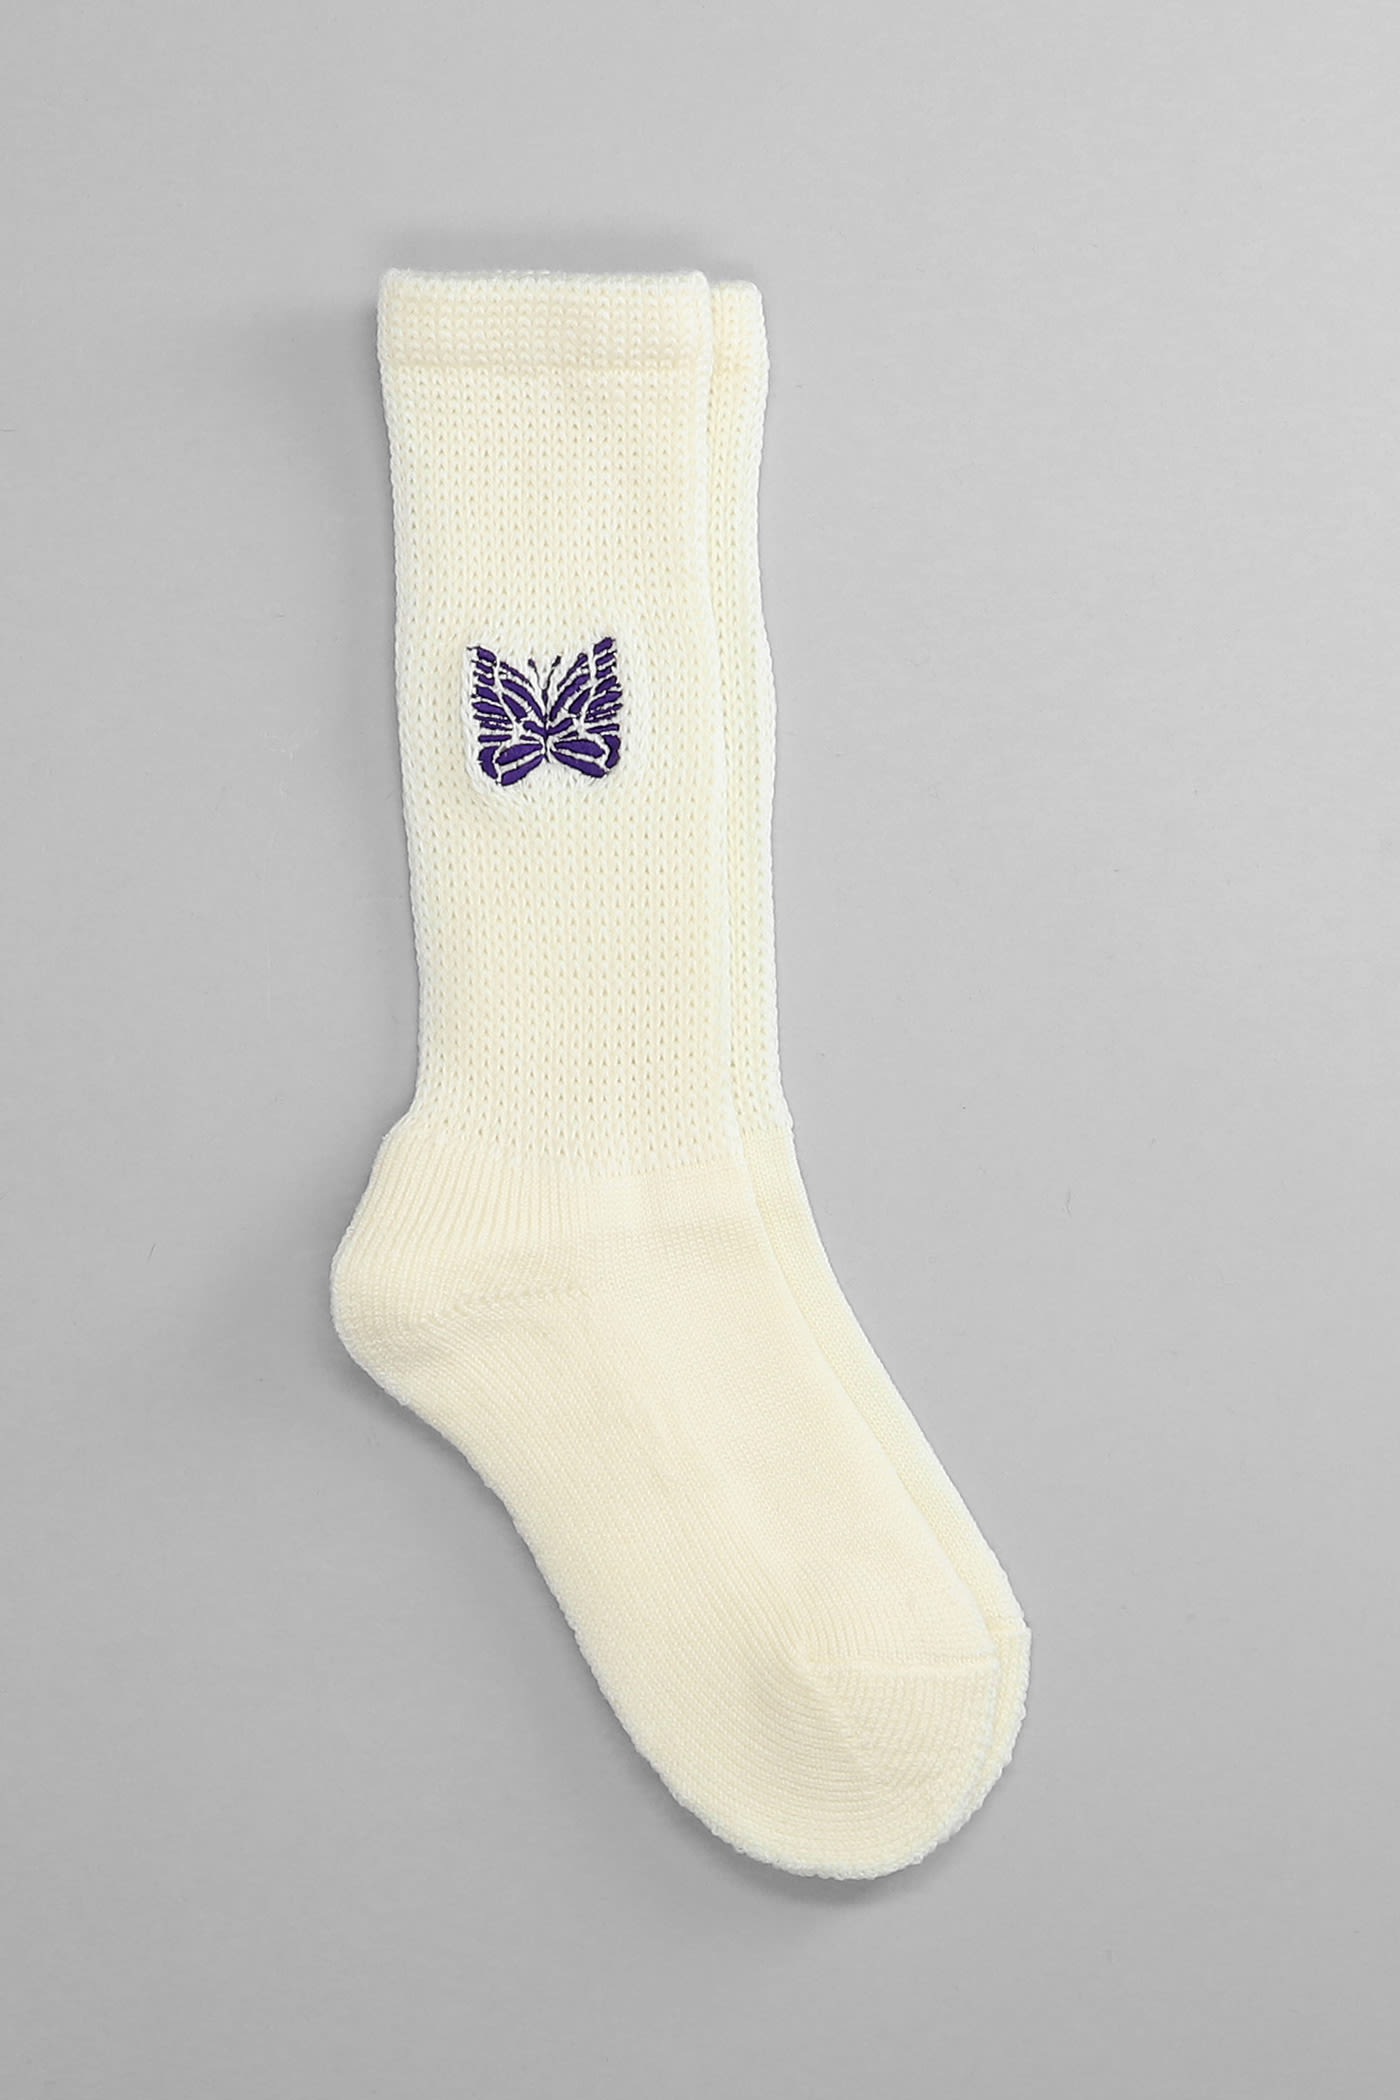 Needles Socks In White Wool